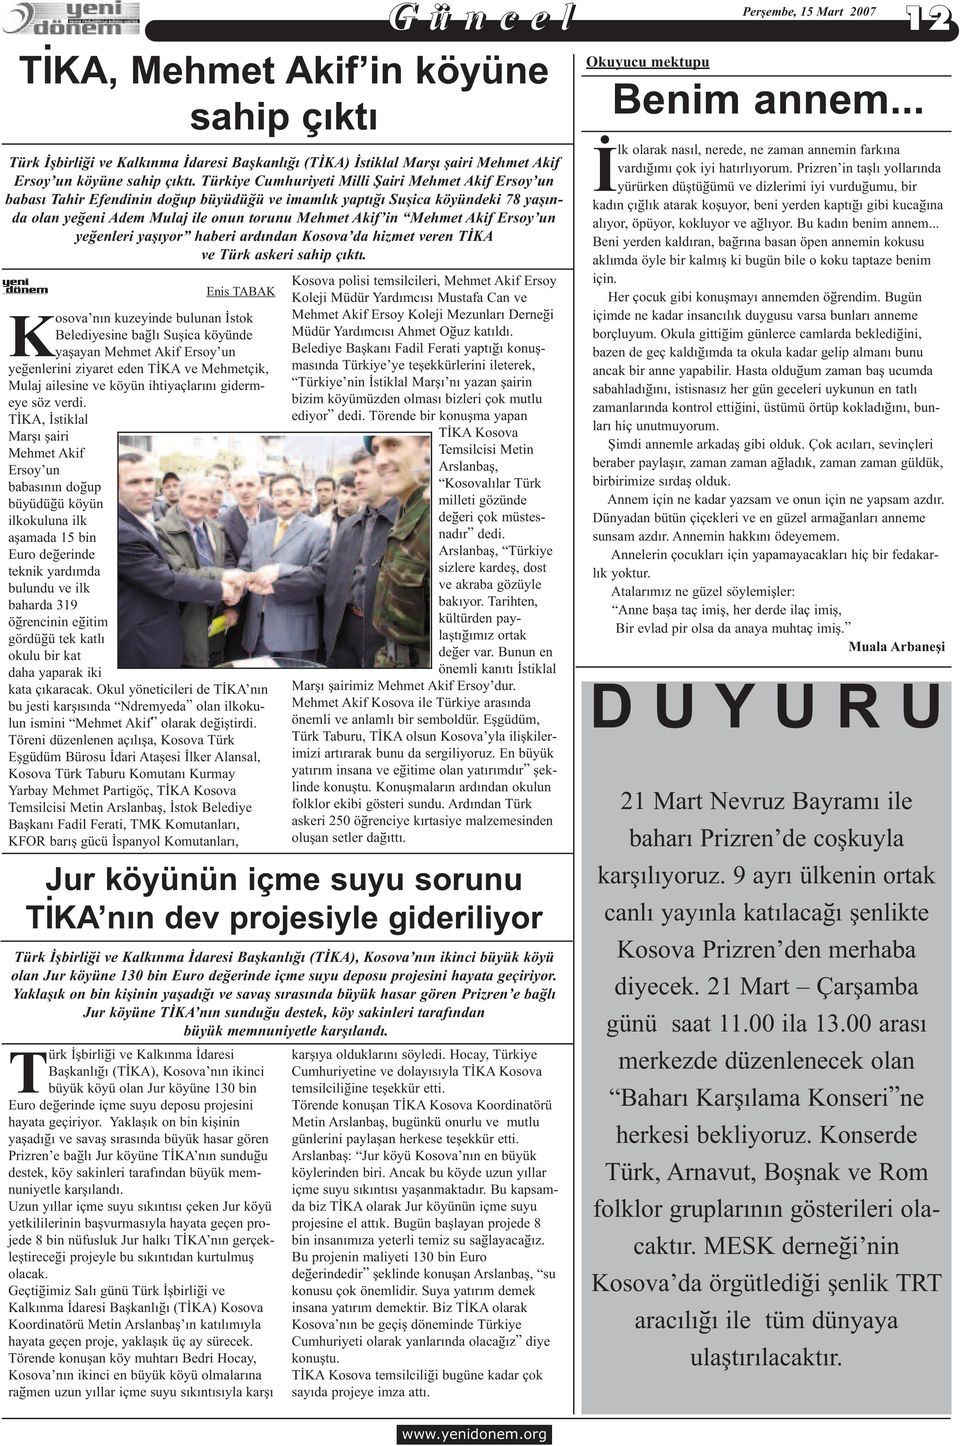 Akif Ersoy un yeðenleri yaþýyor haberi ardýndan Kosova da hizmet veren TÝKA ve Türk askeri sahip çýktý.